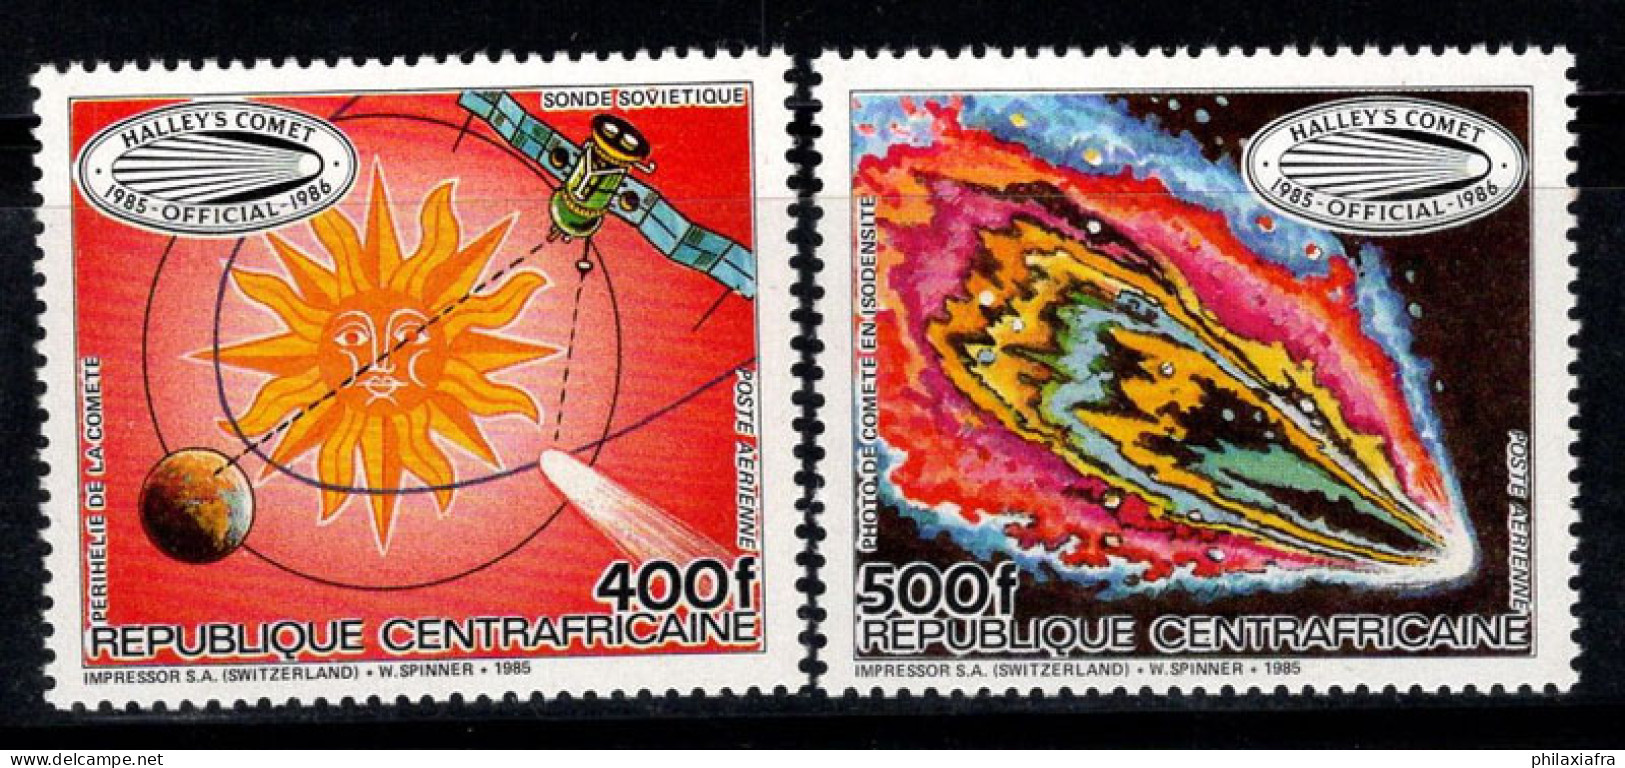 République Centrafricaine 1985 Mi. 1191-1192 Neuf ** 100% Poste Aérienne Comète De Halley - Centrafricaine (République)